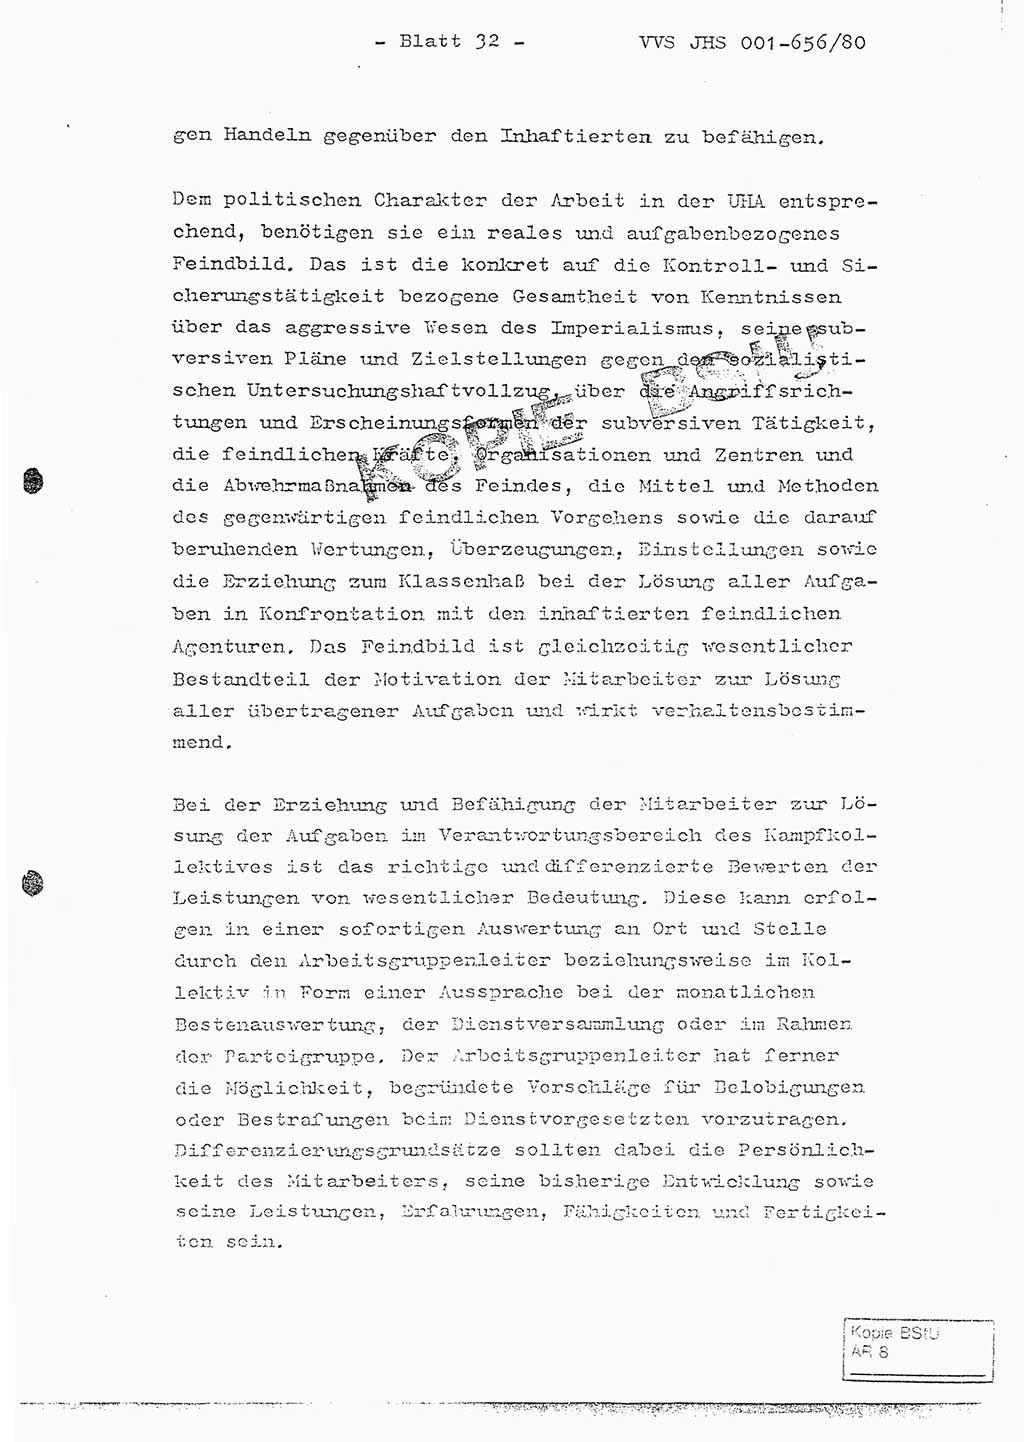 Fachschulabschlußarbeit Unterleutnant Christian Kätzel (Abt. ⅩⅣ), Ministerium für Staatssicherheit (MfS) [Deutsche Demokratische Republik (DDR)], Juristische Hochschule (JHS), Vertrauliche Verschlußsache (VVS) 001-656/80, Potsdam 1980, Blatt 32 (FS-Abschl.-Arb. MfS DDR JHS VVS 001-656/80 1980, Bl. 32)